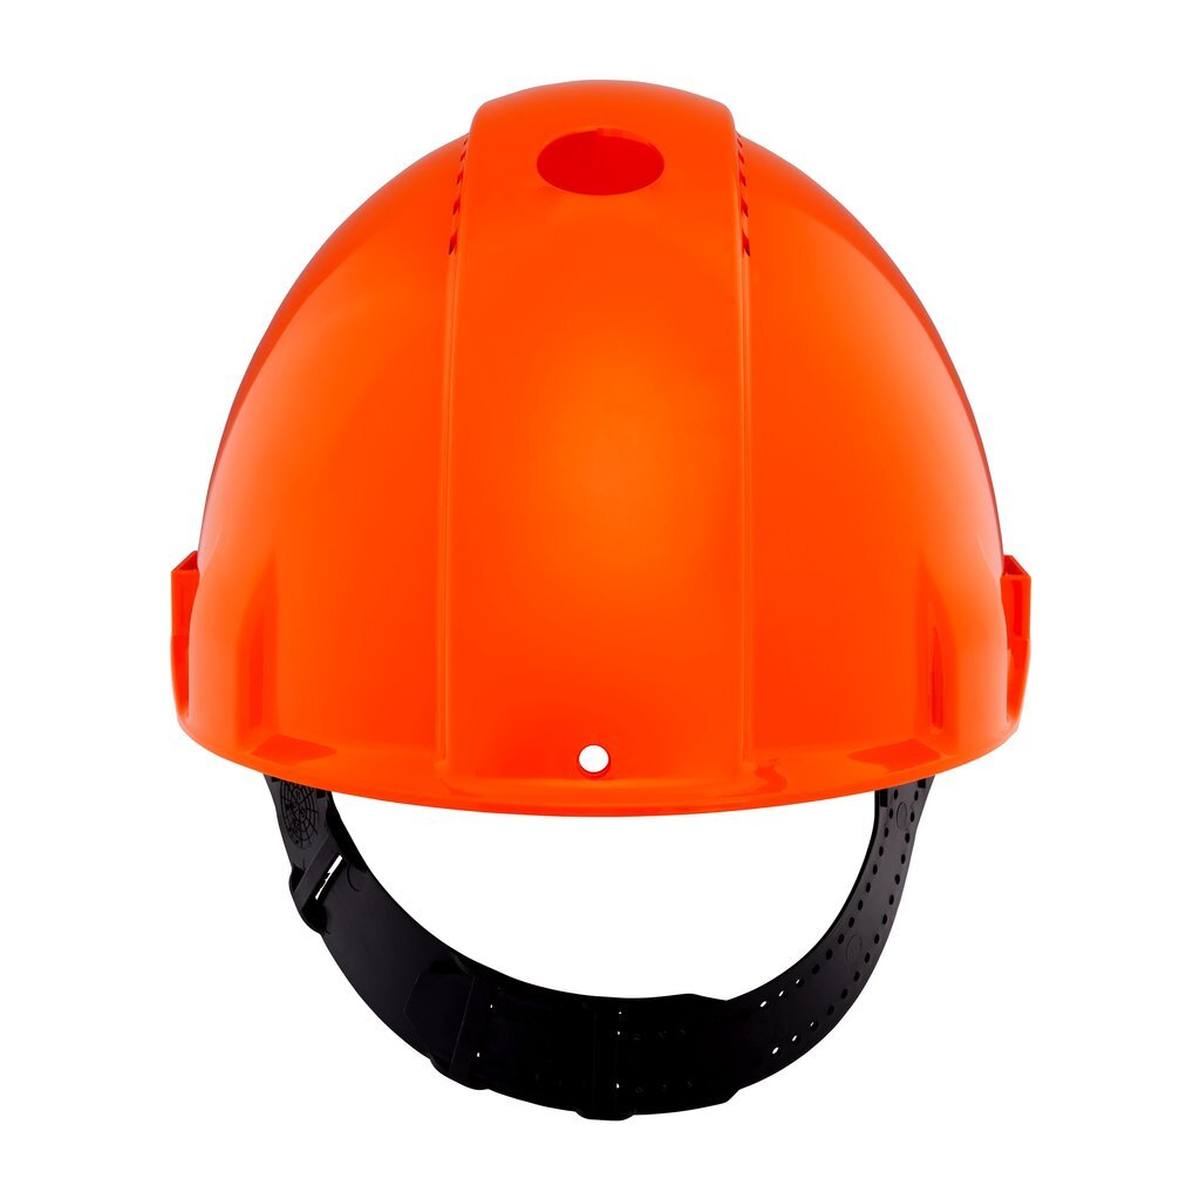 elmetto di sicurezza 3M G3000 G30CUO in arancione, ventilato, con uvicatore, pinlock e fascia antisudore in plastica